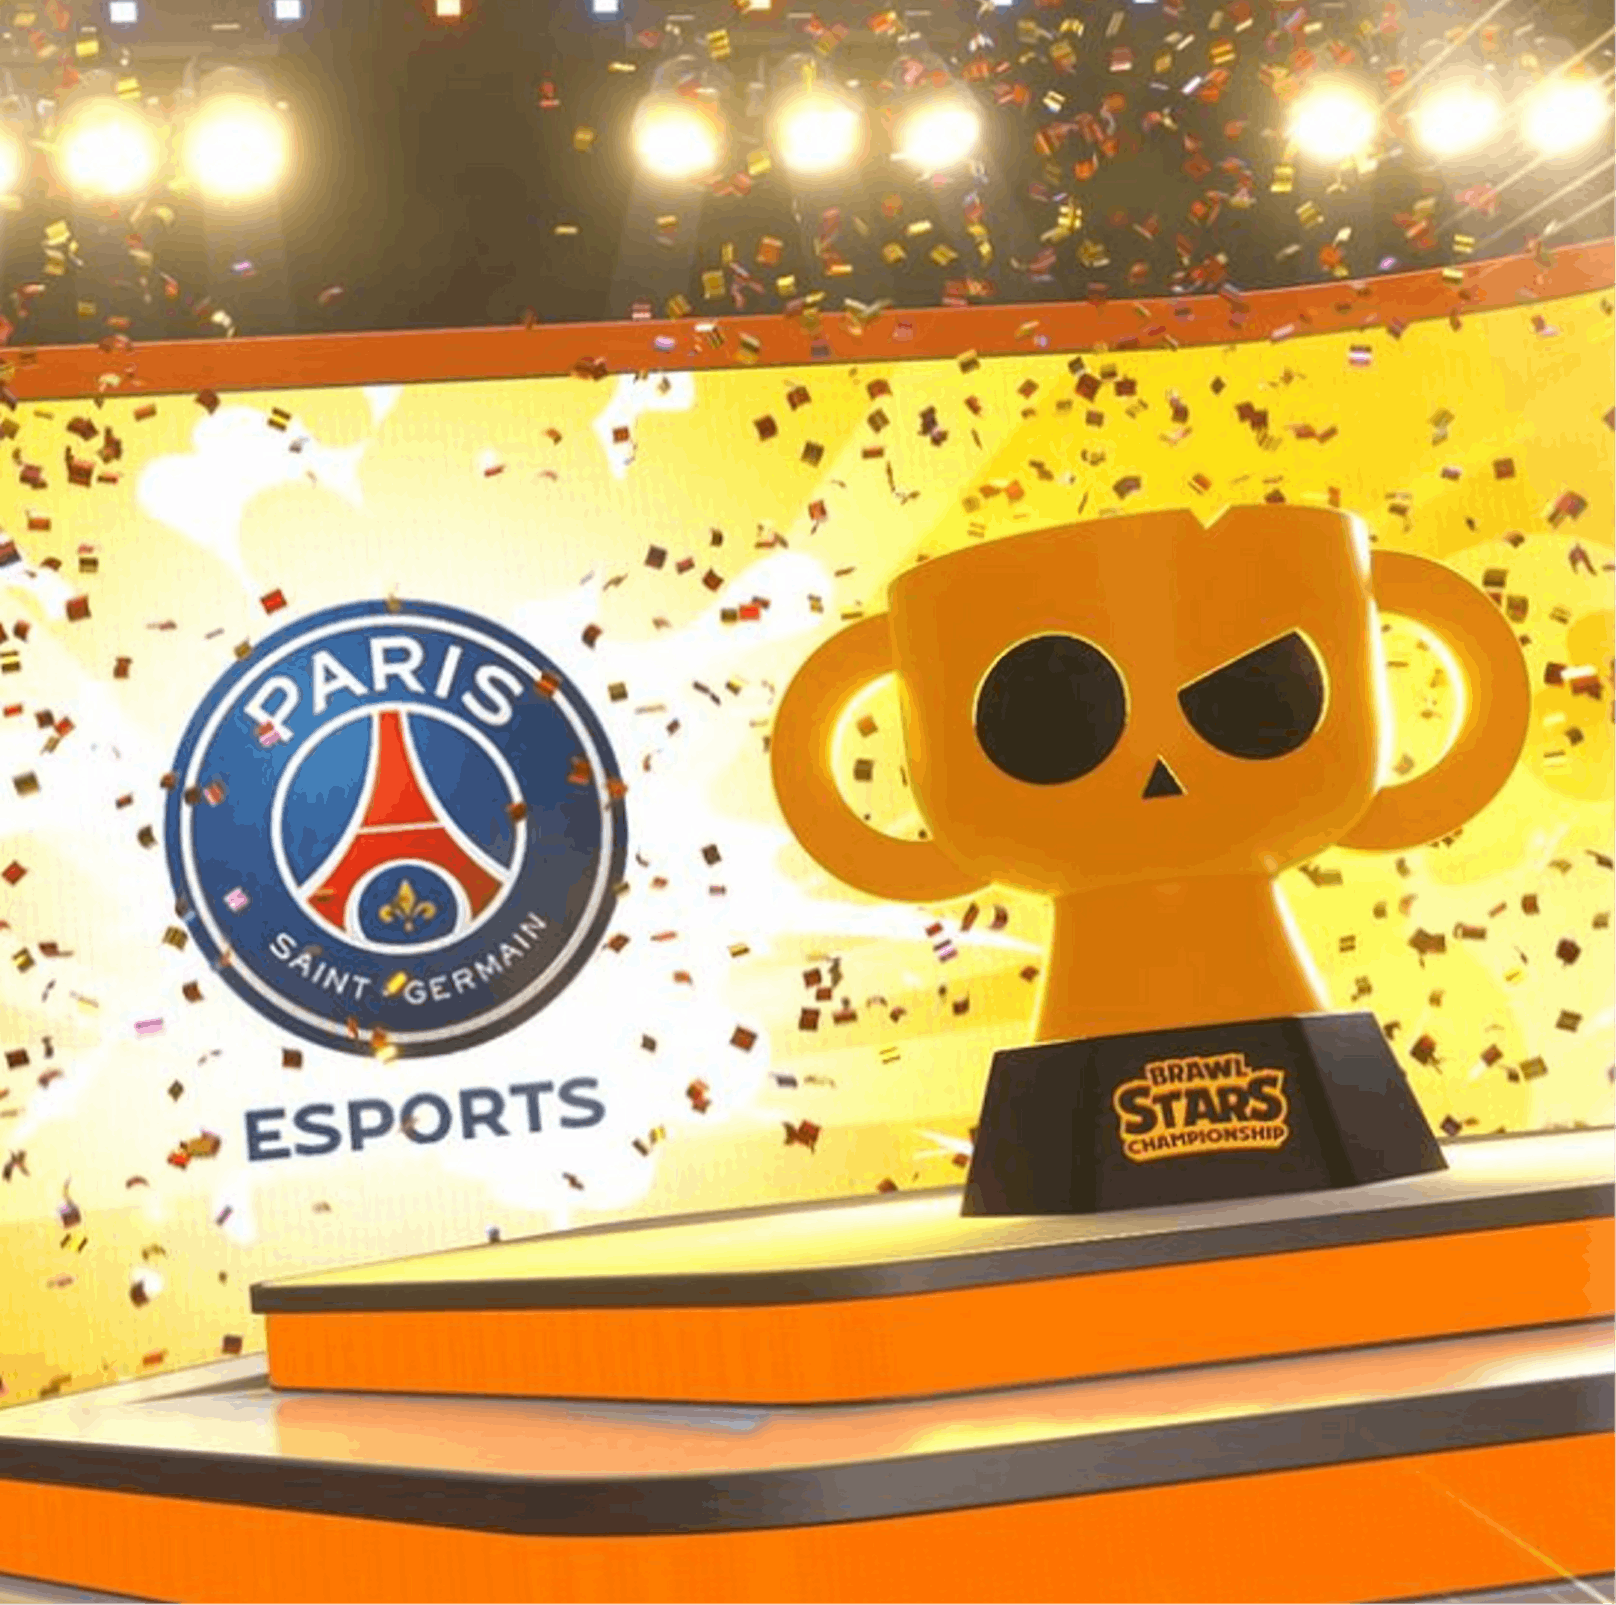 Letztes Jahr konnten die französischen Spieler von Paris Saint-Germain eSports den Titel und Pokal für sich beanspruchen.